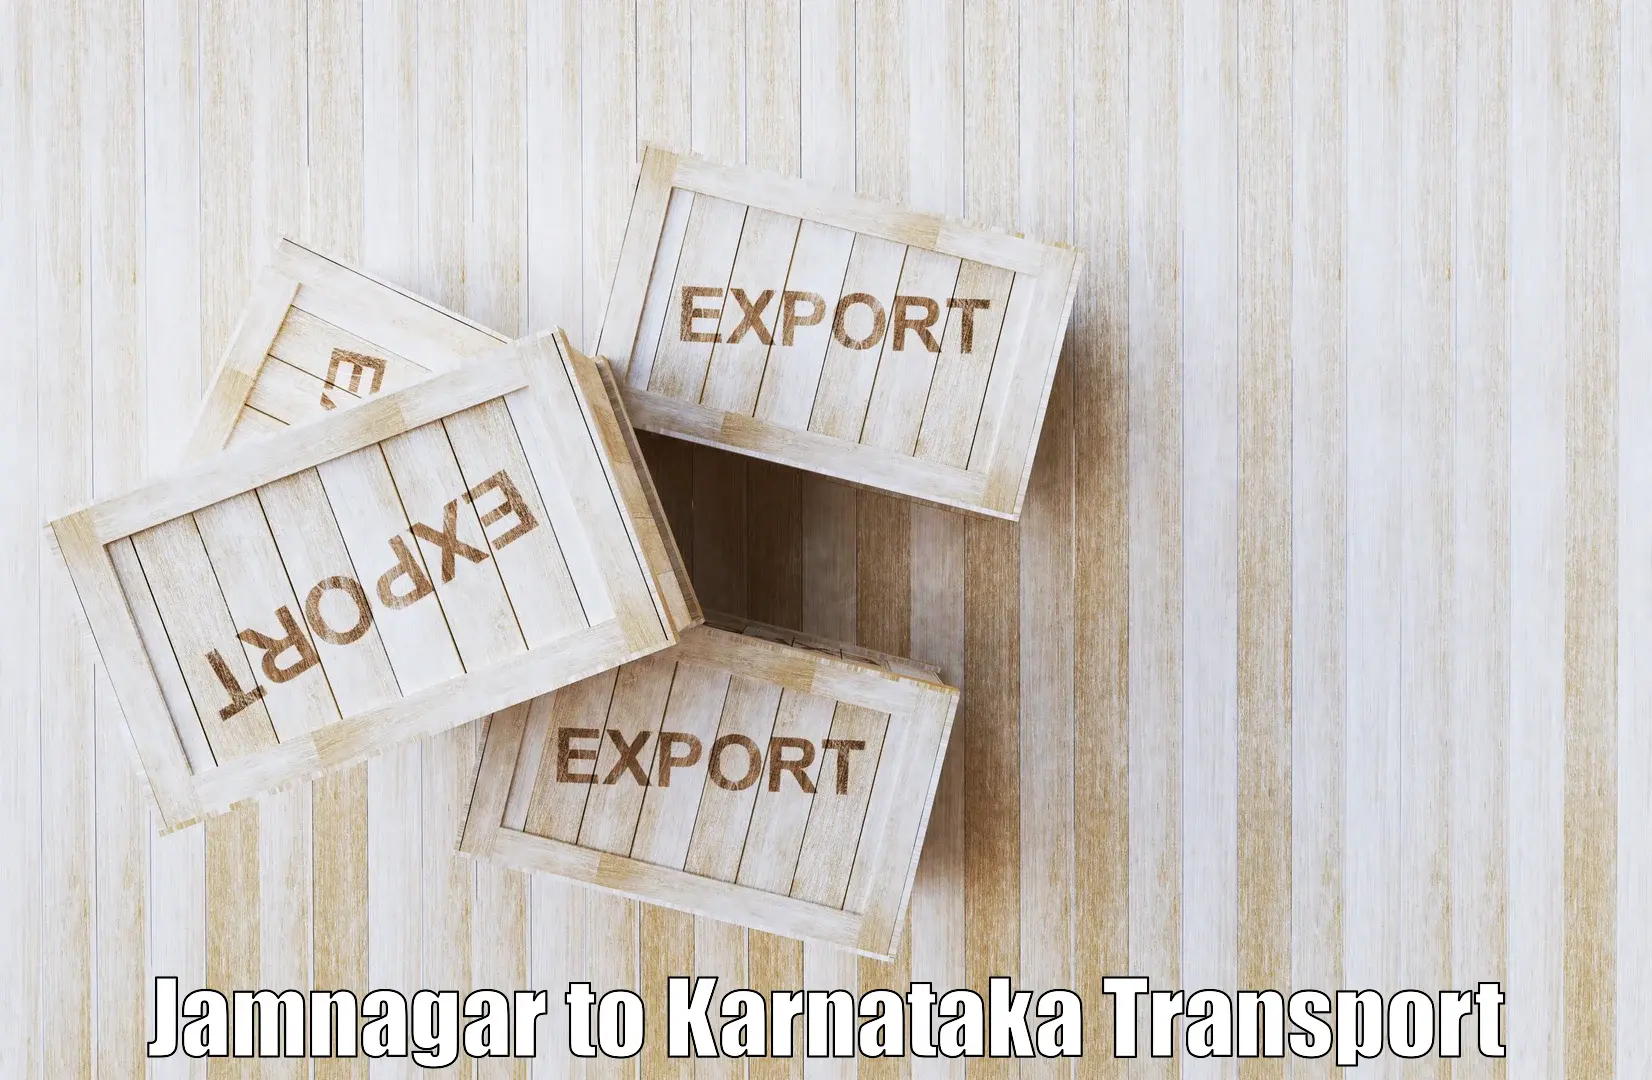 Vehicle transport services Jamnagar to Kalaghatgi